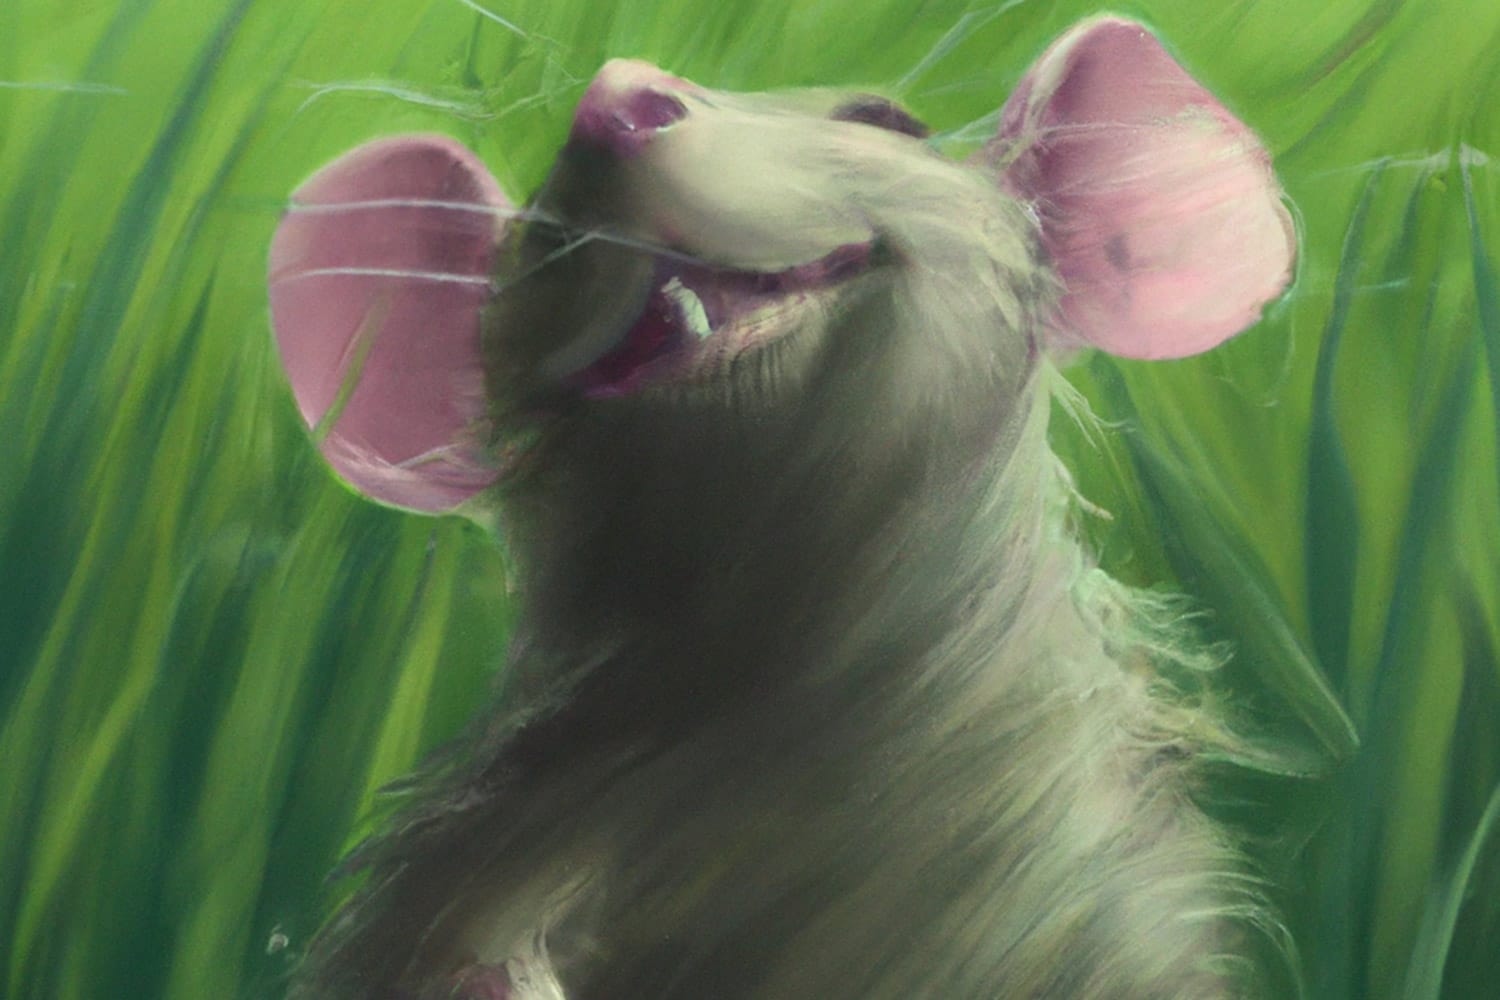 Los científicos investigaron cómo los bigotes detectan el flujo de aire en ratones